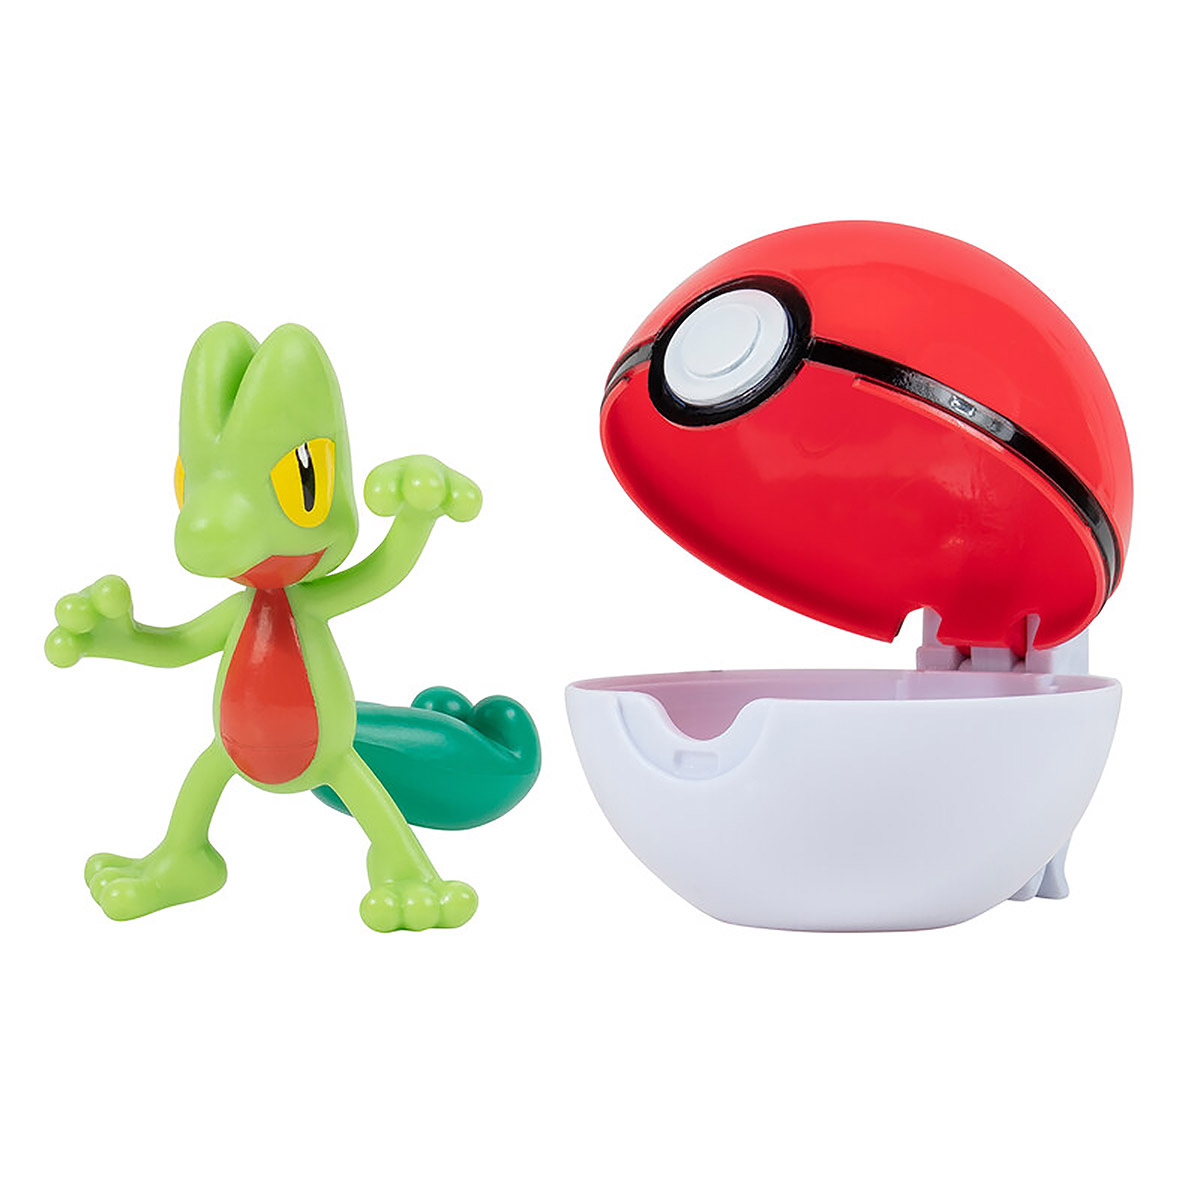 Boneco Pokémon Treecko + Poke Ball